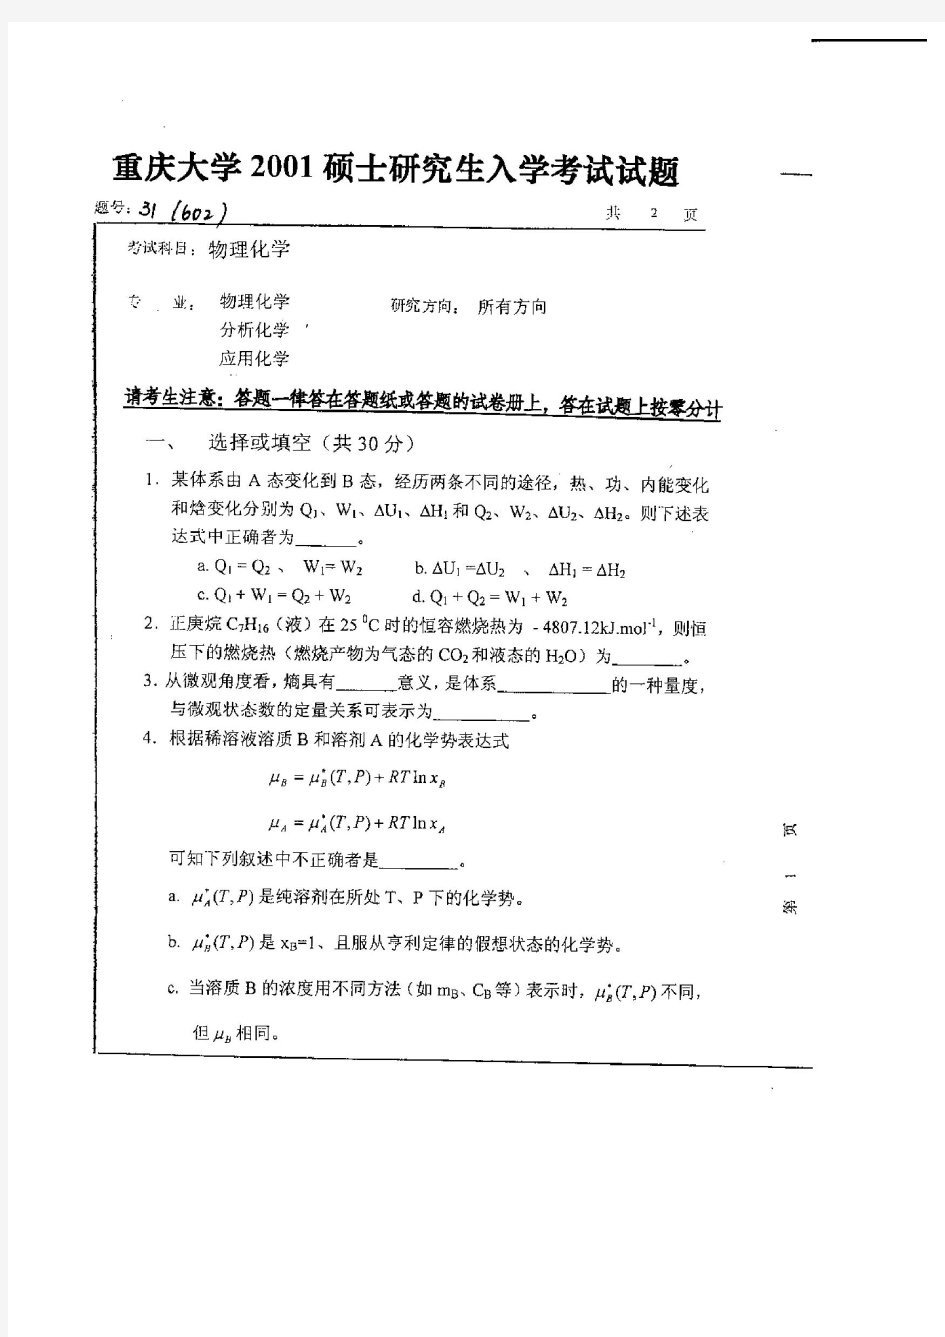 2001年重庆大学硕士研究生物理化学入学考试考试